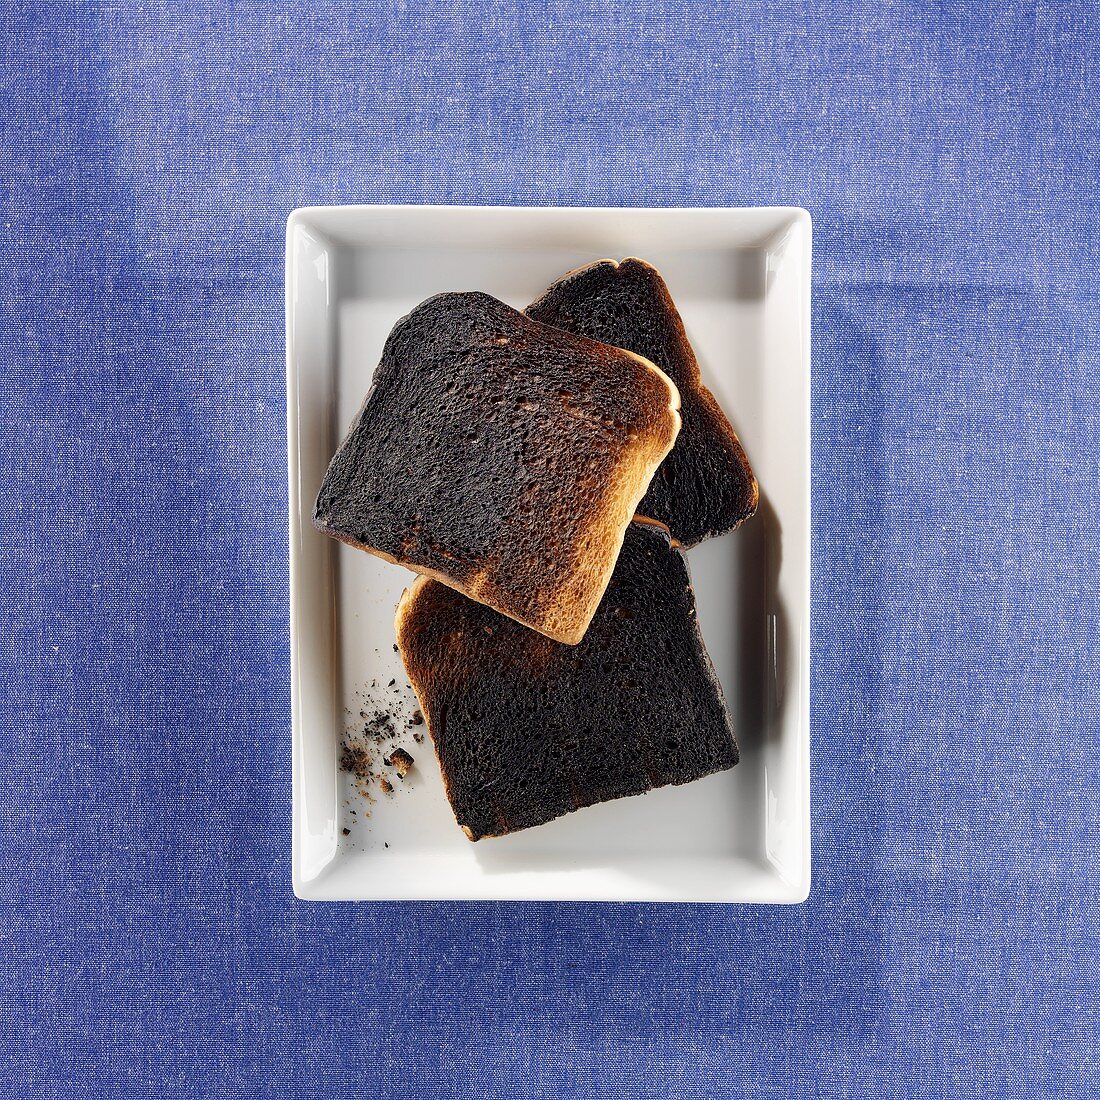 Three slices of burnt toast